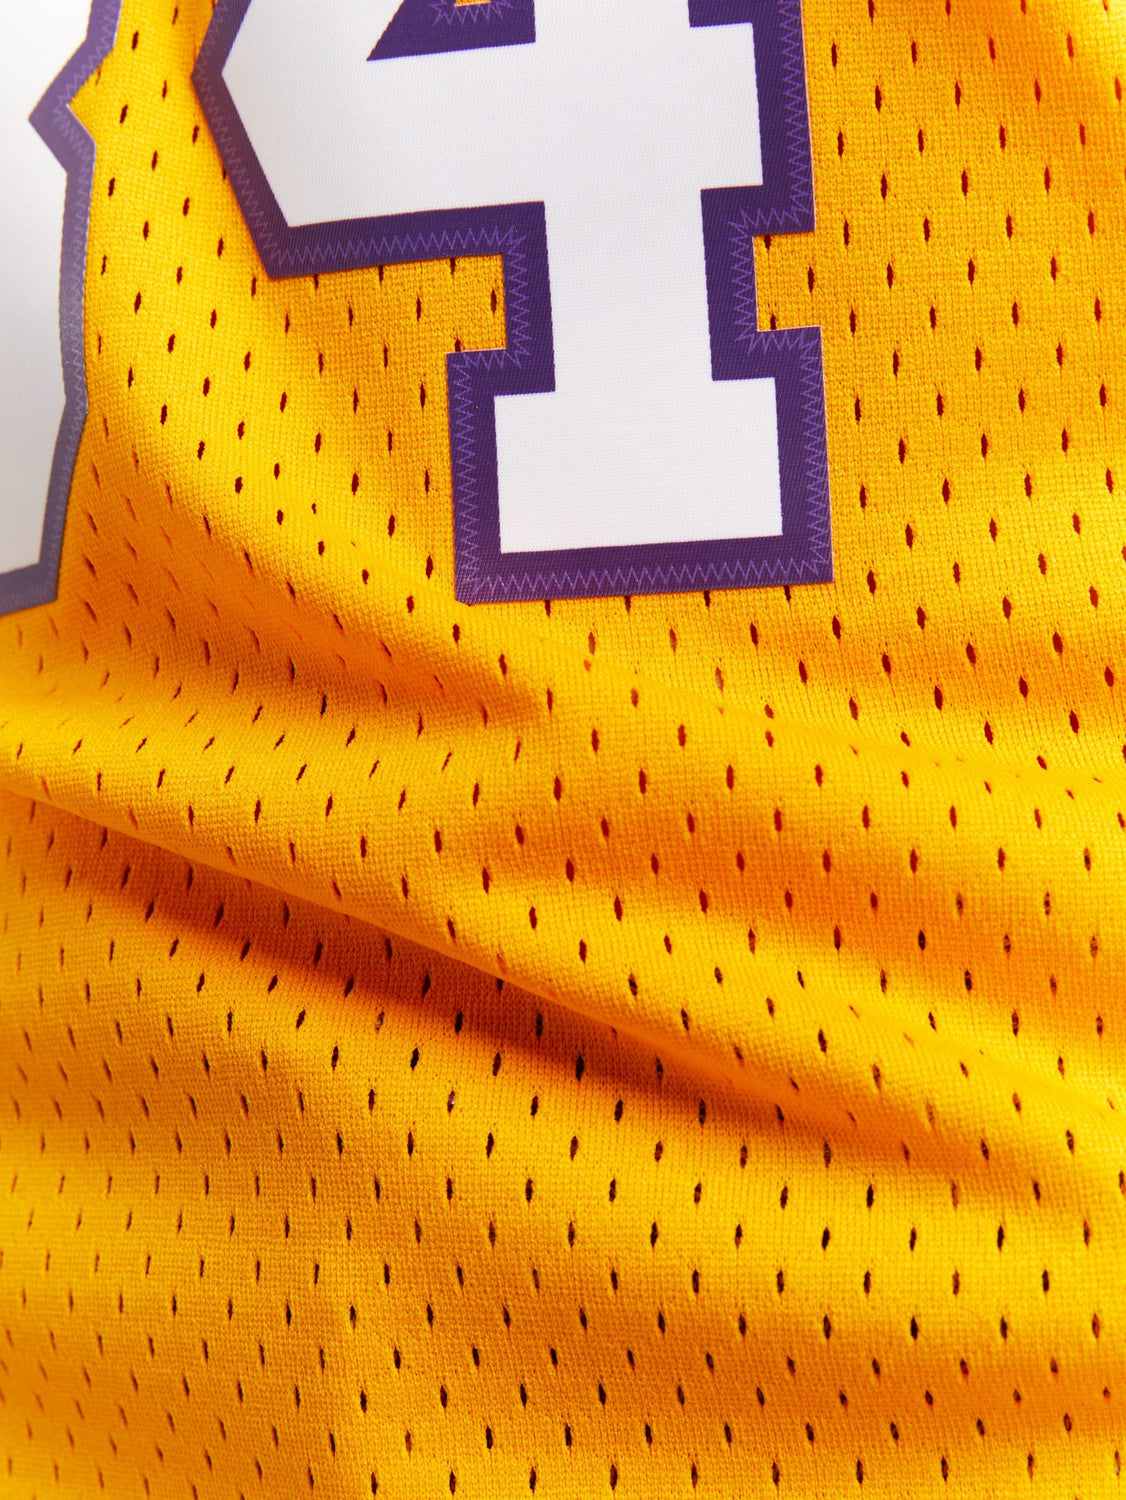 Shaquille O'Neal LA Lakers 1999-00 Swingman Jersey - Detroit City